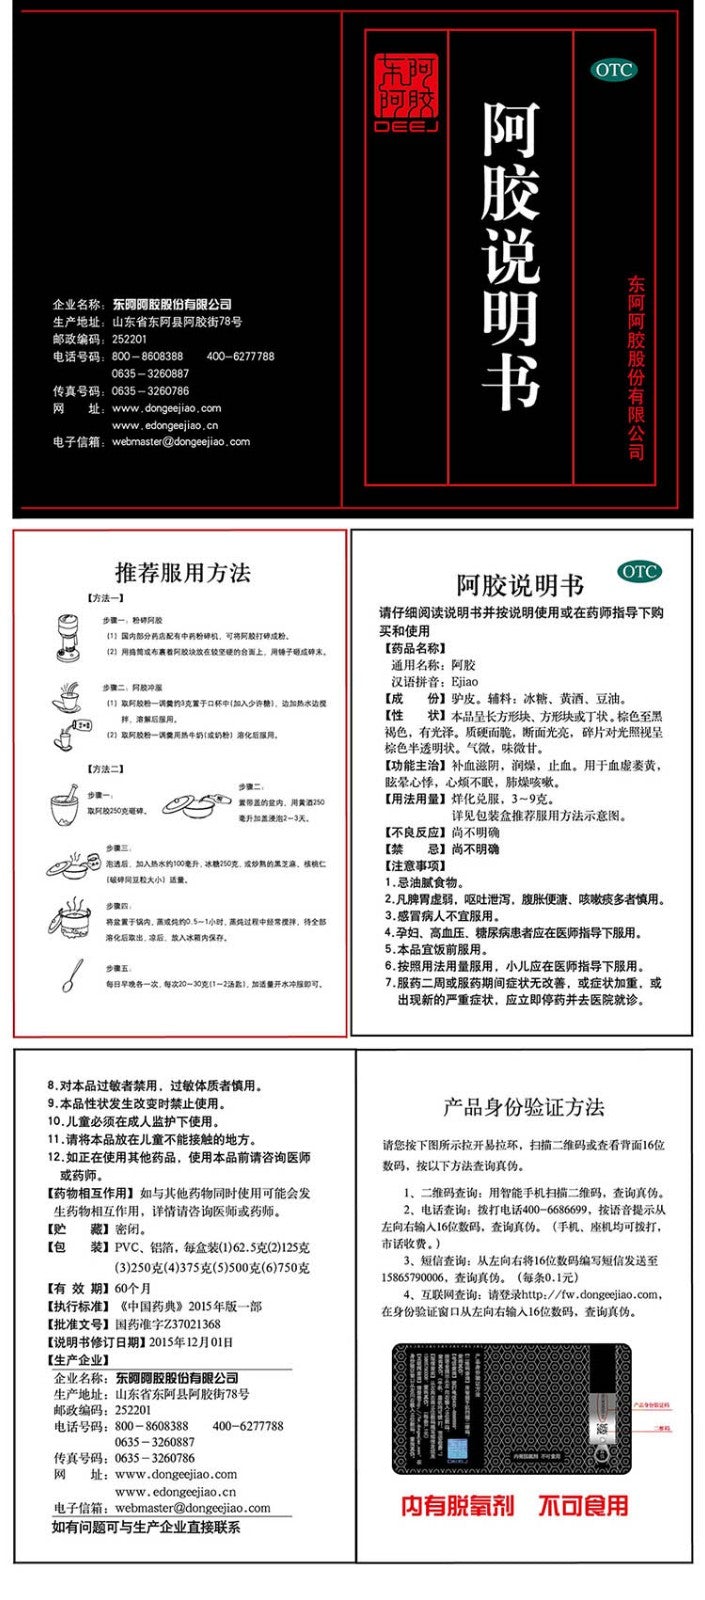 Dong E E Jiao or E Jiao or E Jiao Piece for anemia,insomnia,menopause. (125g/lot)